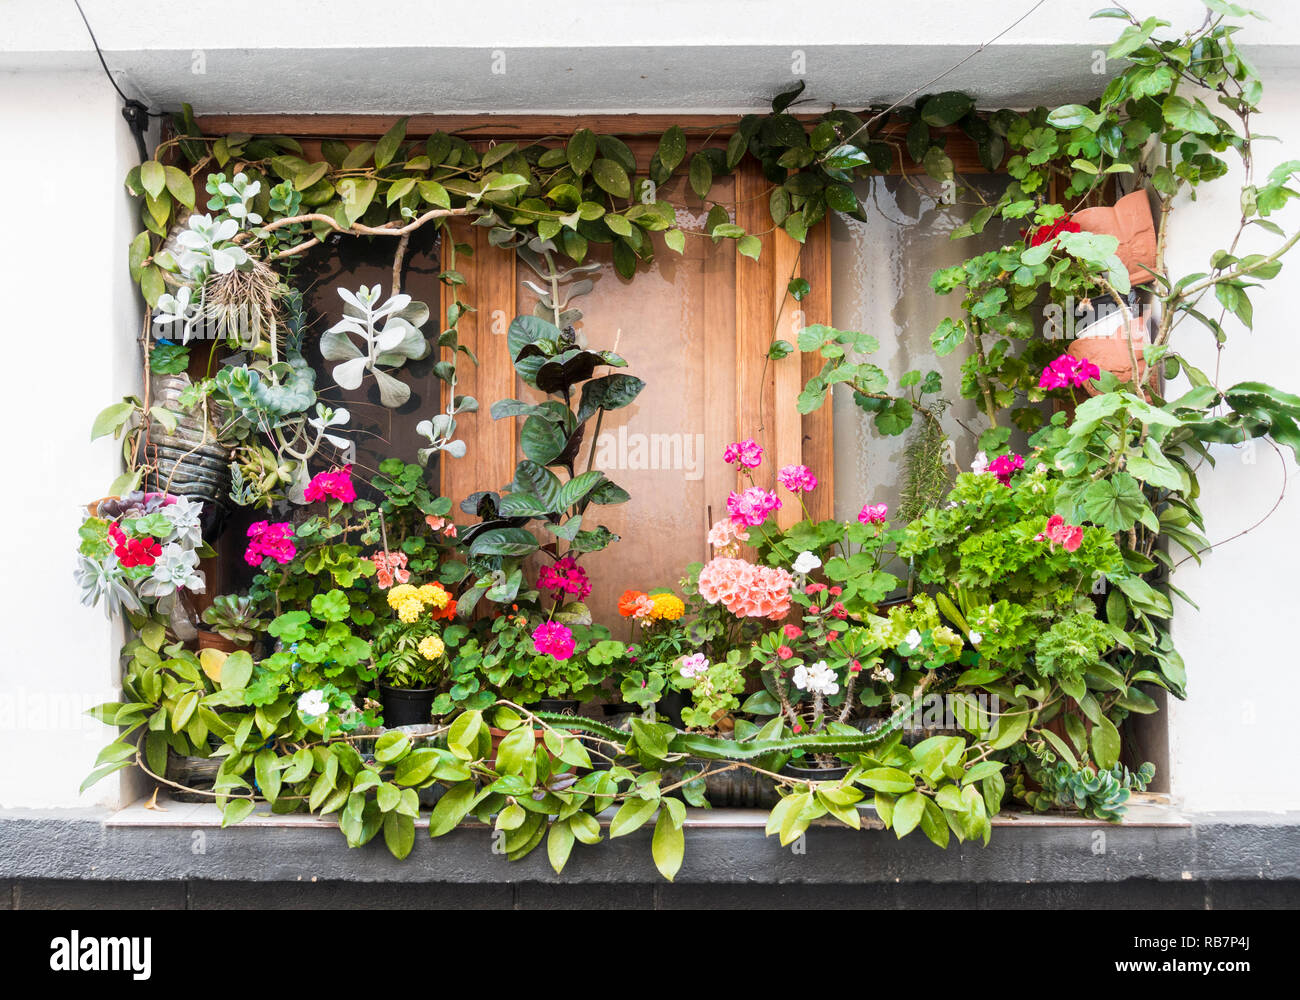 Finestra giardino. Piante colorate attorno al finestrino di un appartamento in una strada della citta'. Foto Stock